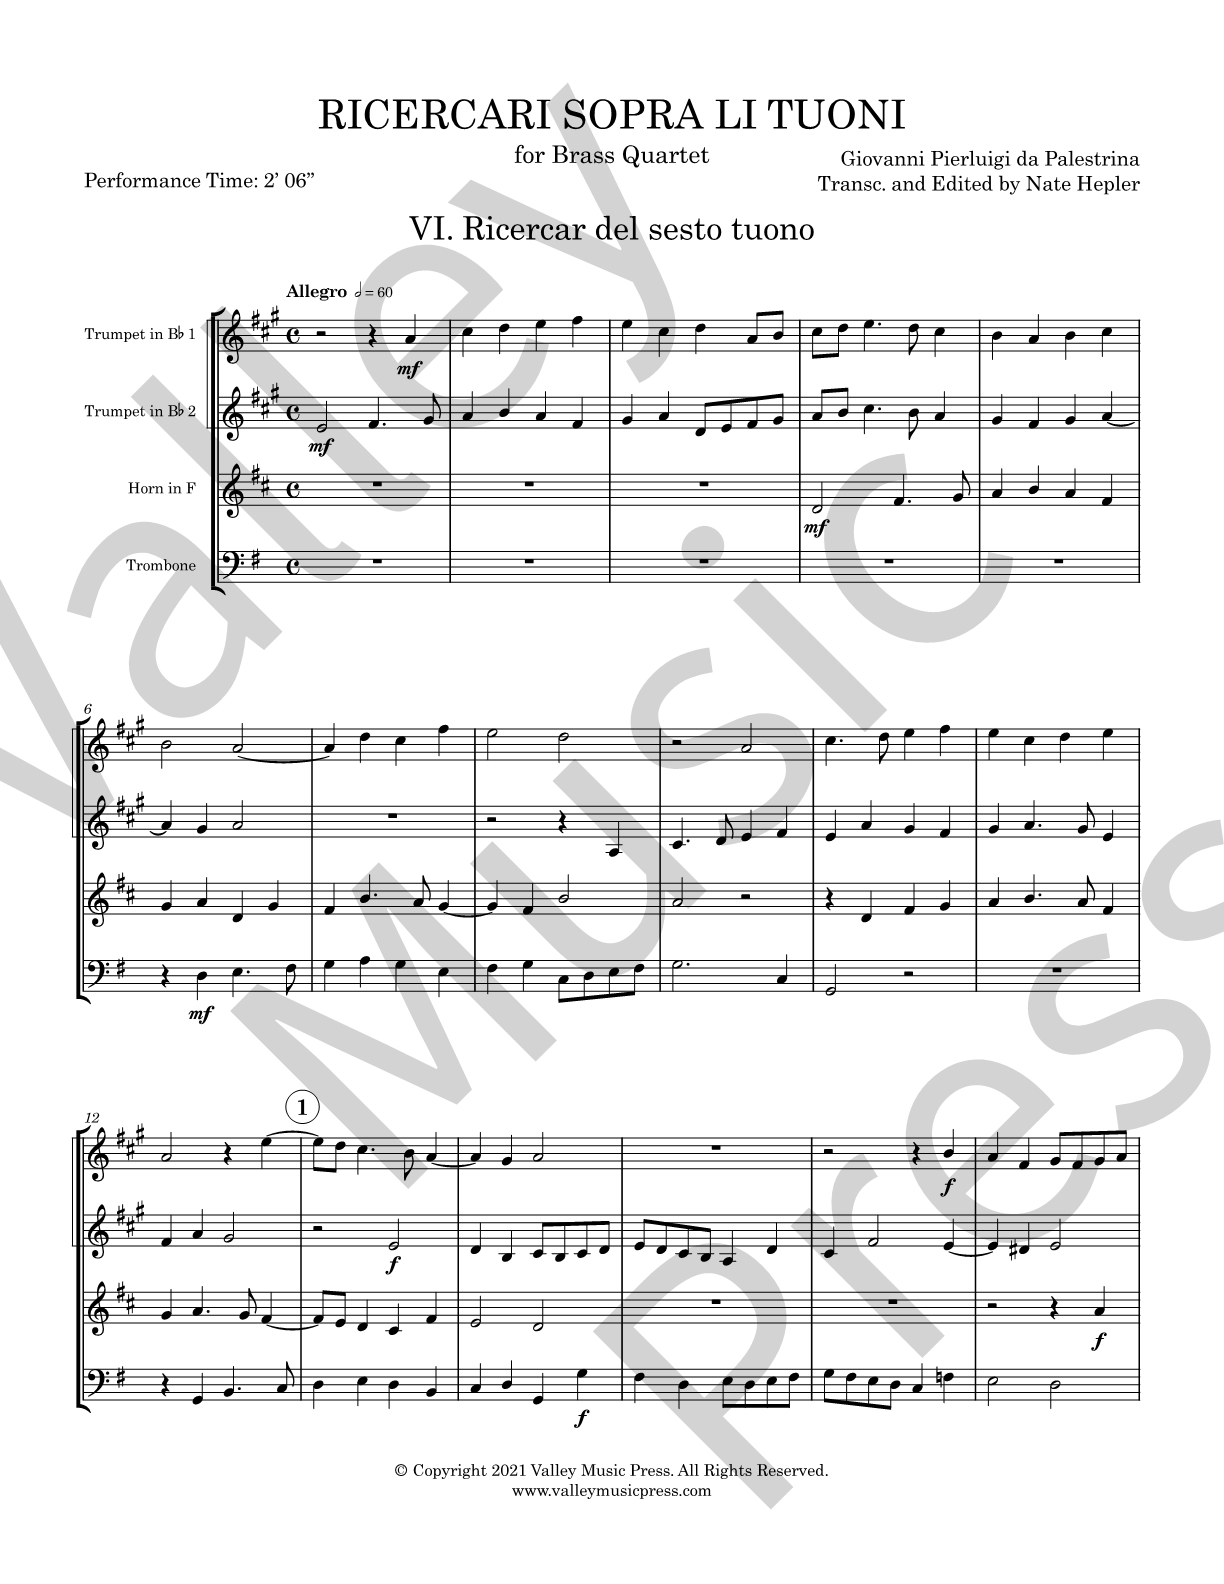 Palestrina - Ricercar del sesto tuono (No. 6) (Brass Quartet)